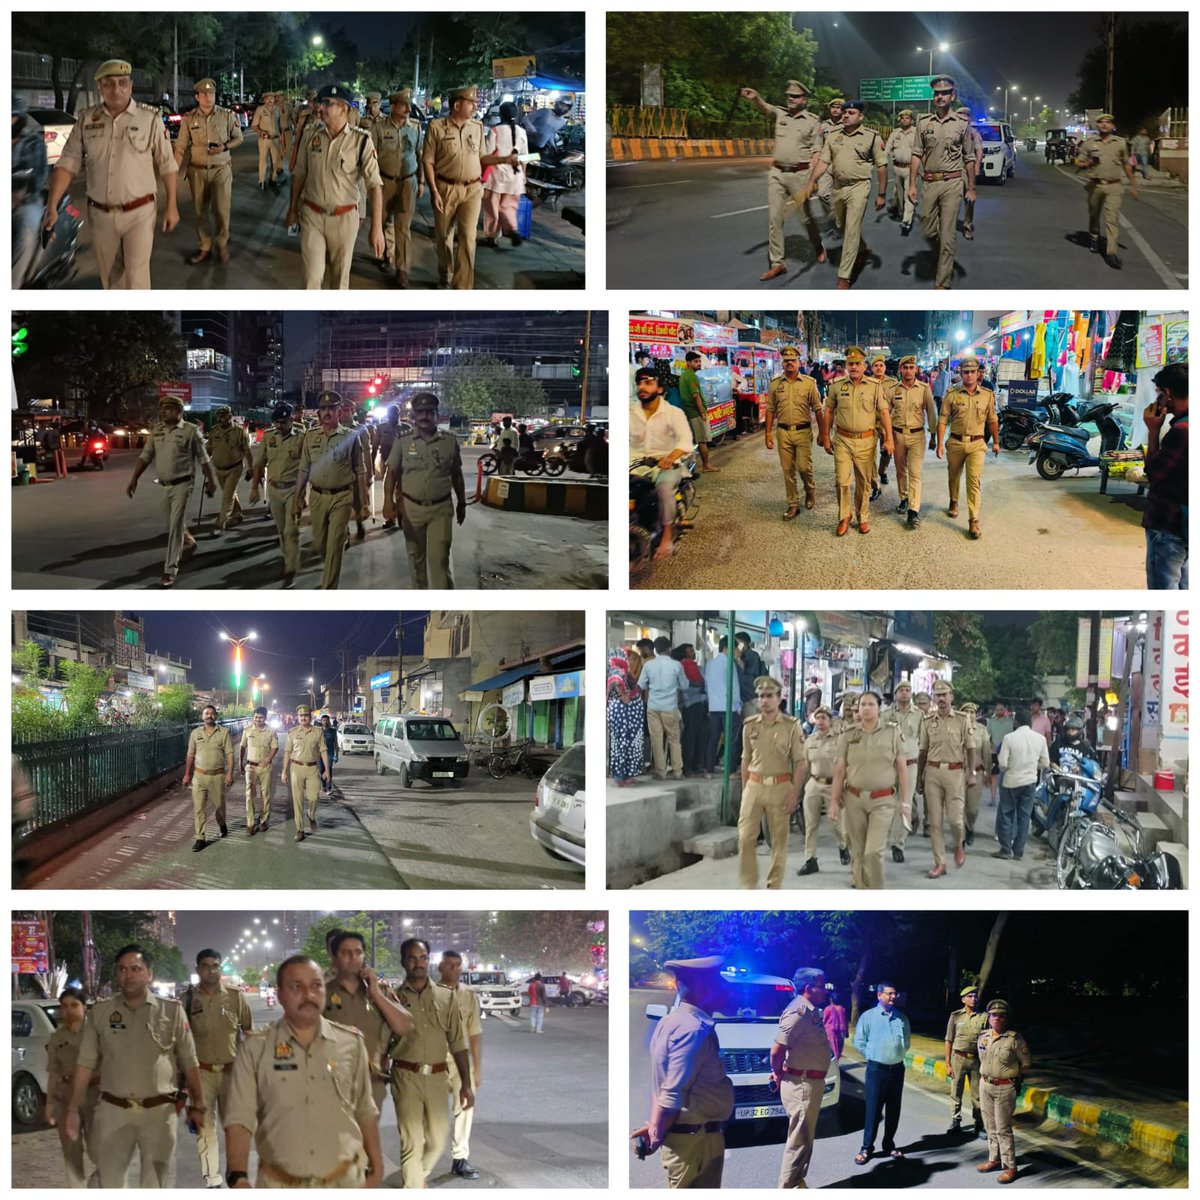 पुलिस कमिश्नरेट गौतमबुद्धनगर के सभी थाना क्षेत्रों में सुरक्षा व्यवस्था के दृष्टिगत पुलिस बल द्वारा पेट्रोलिंग कर चेकिंग की जा रही है ! 'आपकी सुरक्षा हमारी जिम्मेदारी' #NoidaPolice #हर_कदम_साथ